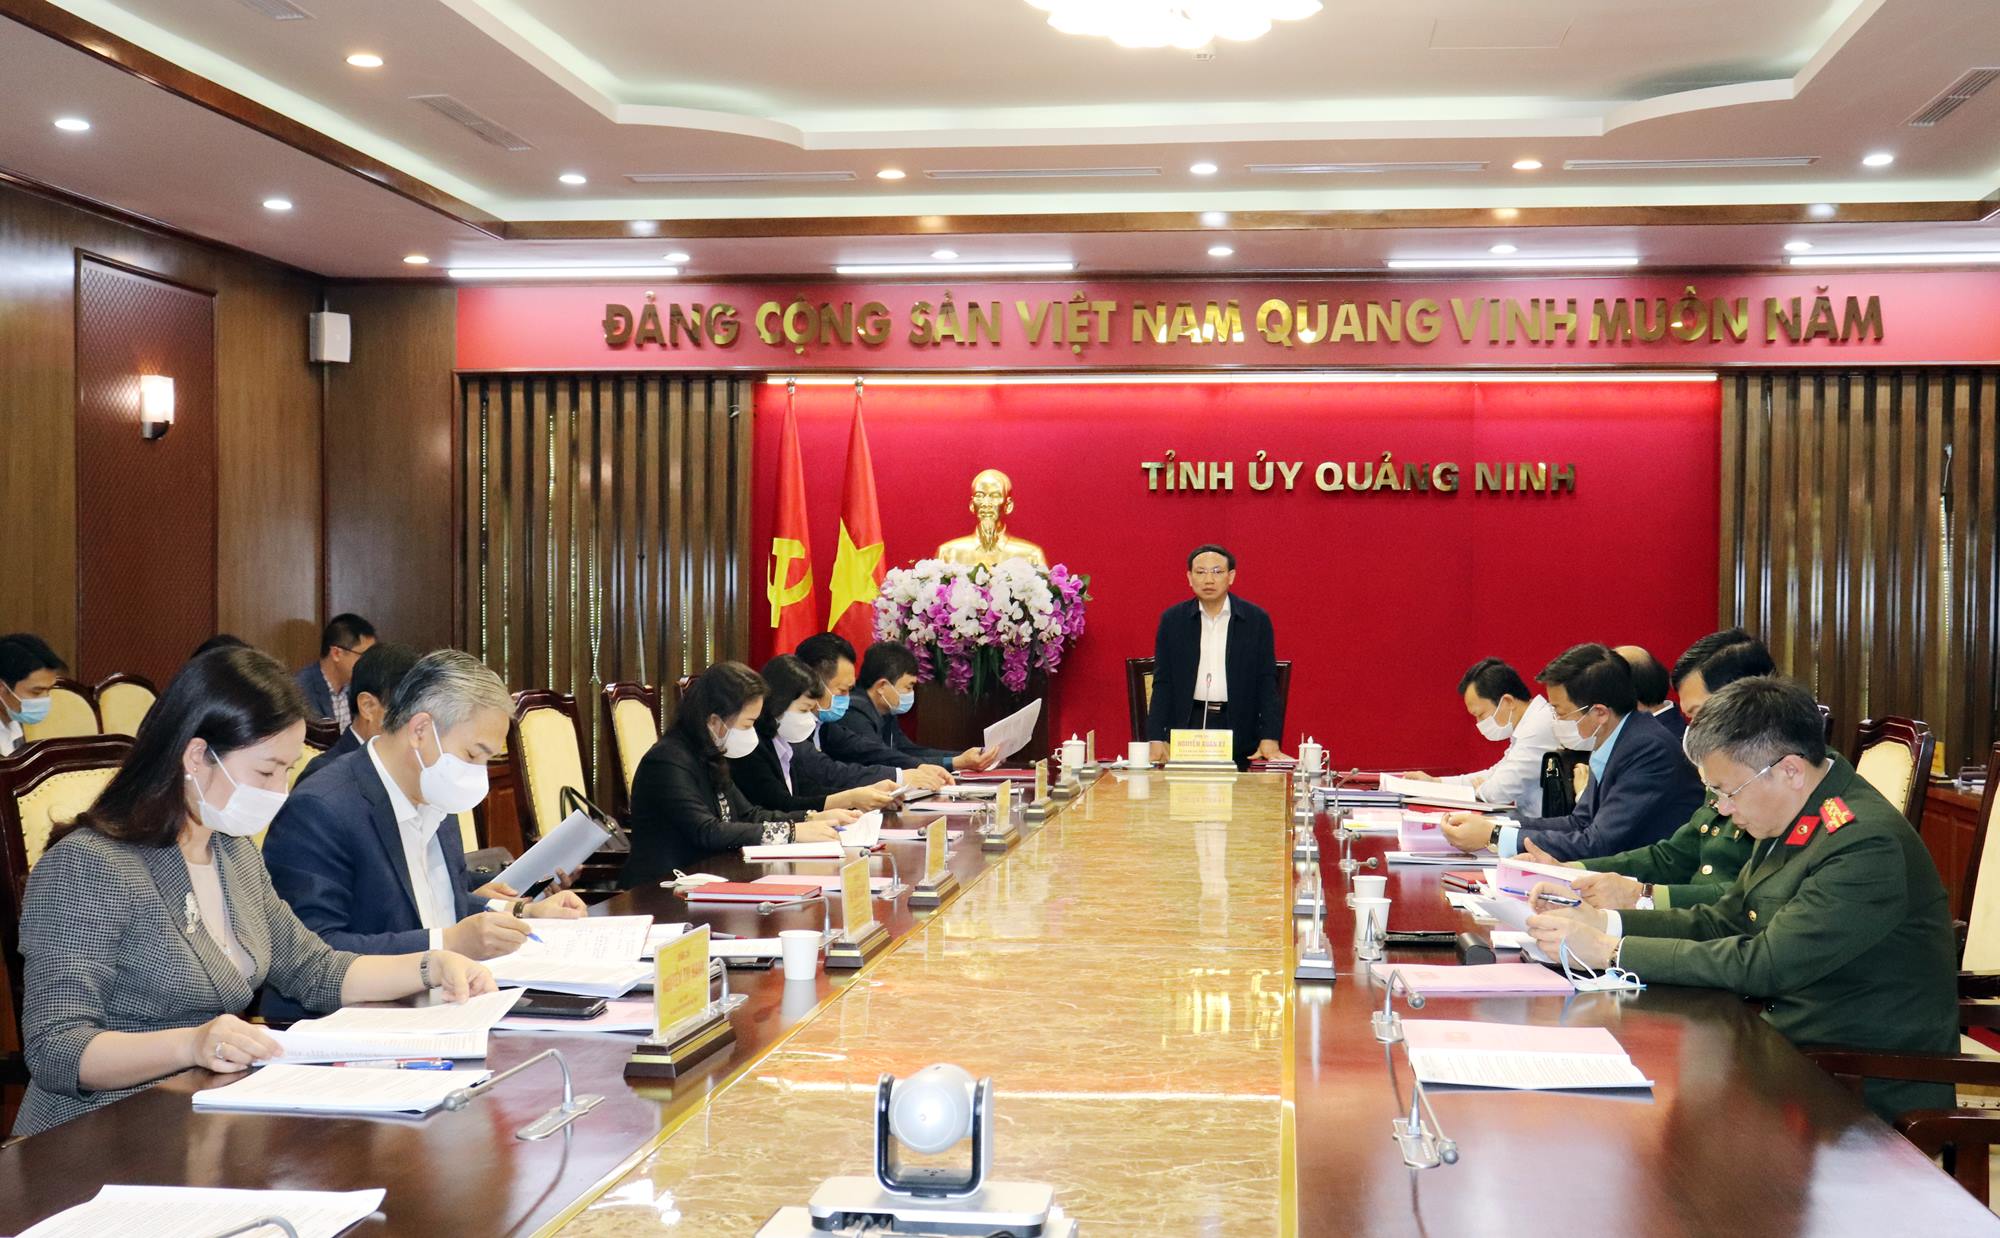 Đồng chí Nguyễn Xuân Ký, Ủy viên BCH Trung ương Đảng, Bí thư Tỉnh ủy, Chủ tịch HĐND tỉnh, chủ trì buổi làm việc.